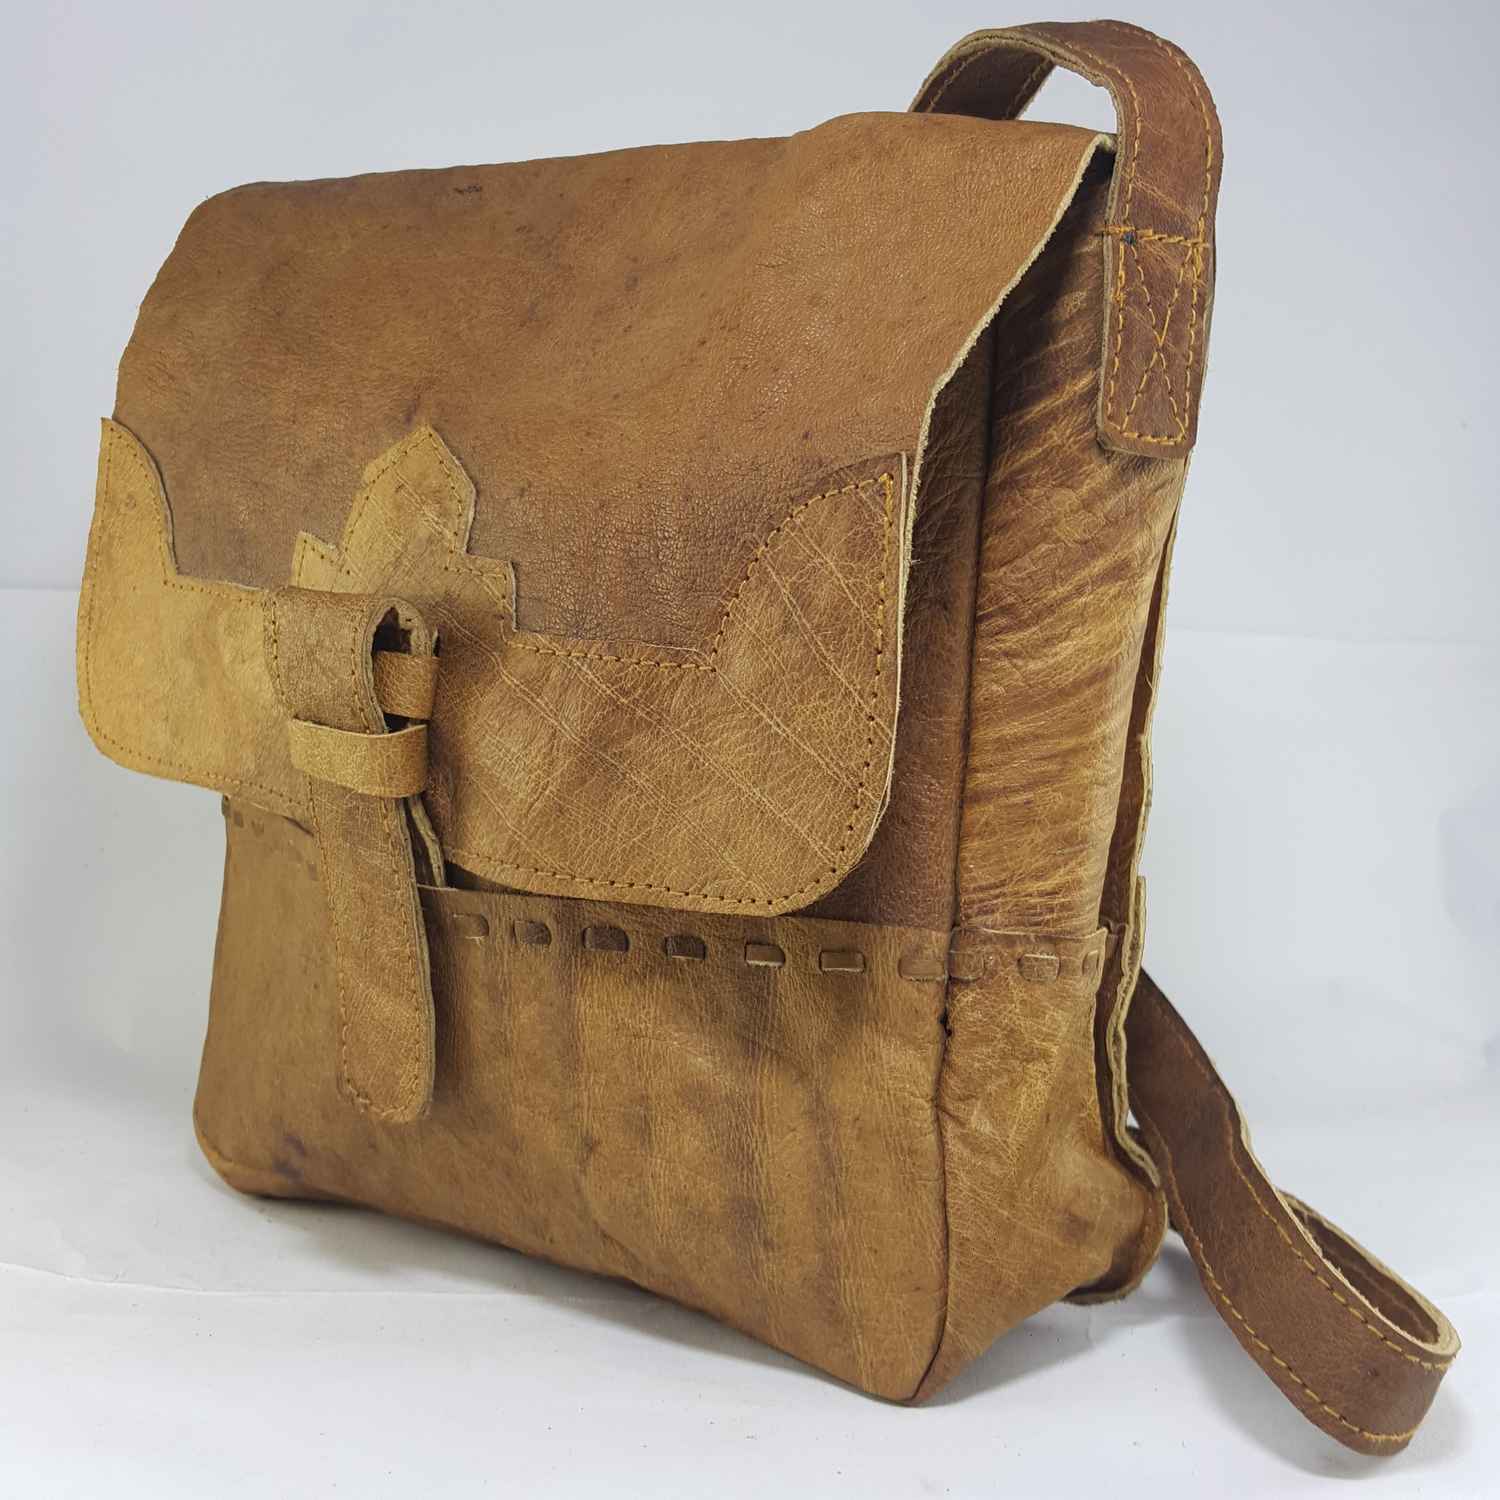 Himalayan Yak Leather Office Shoulder Bag 1 Pocket, 1 Leather Stripe Lock